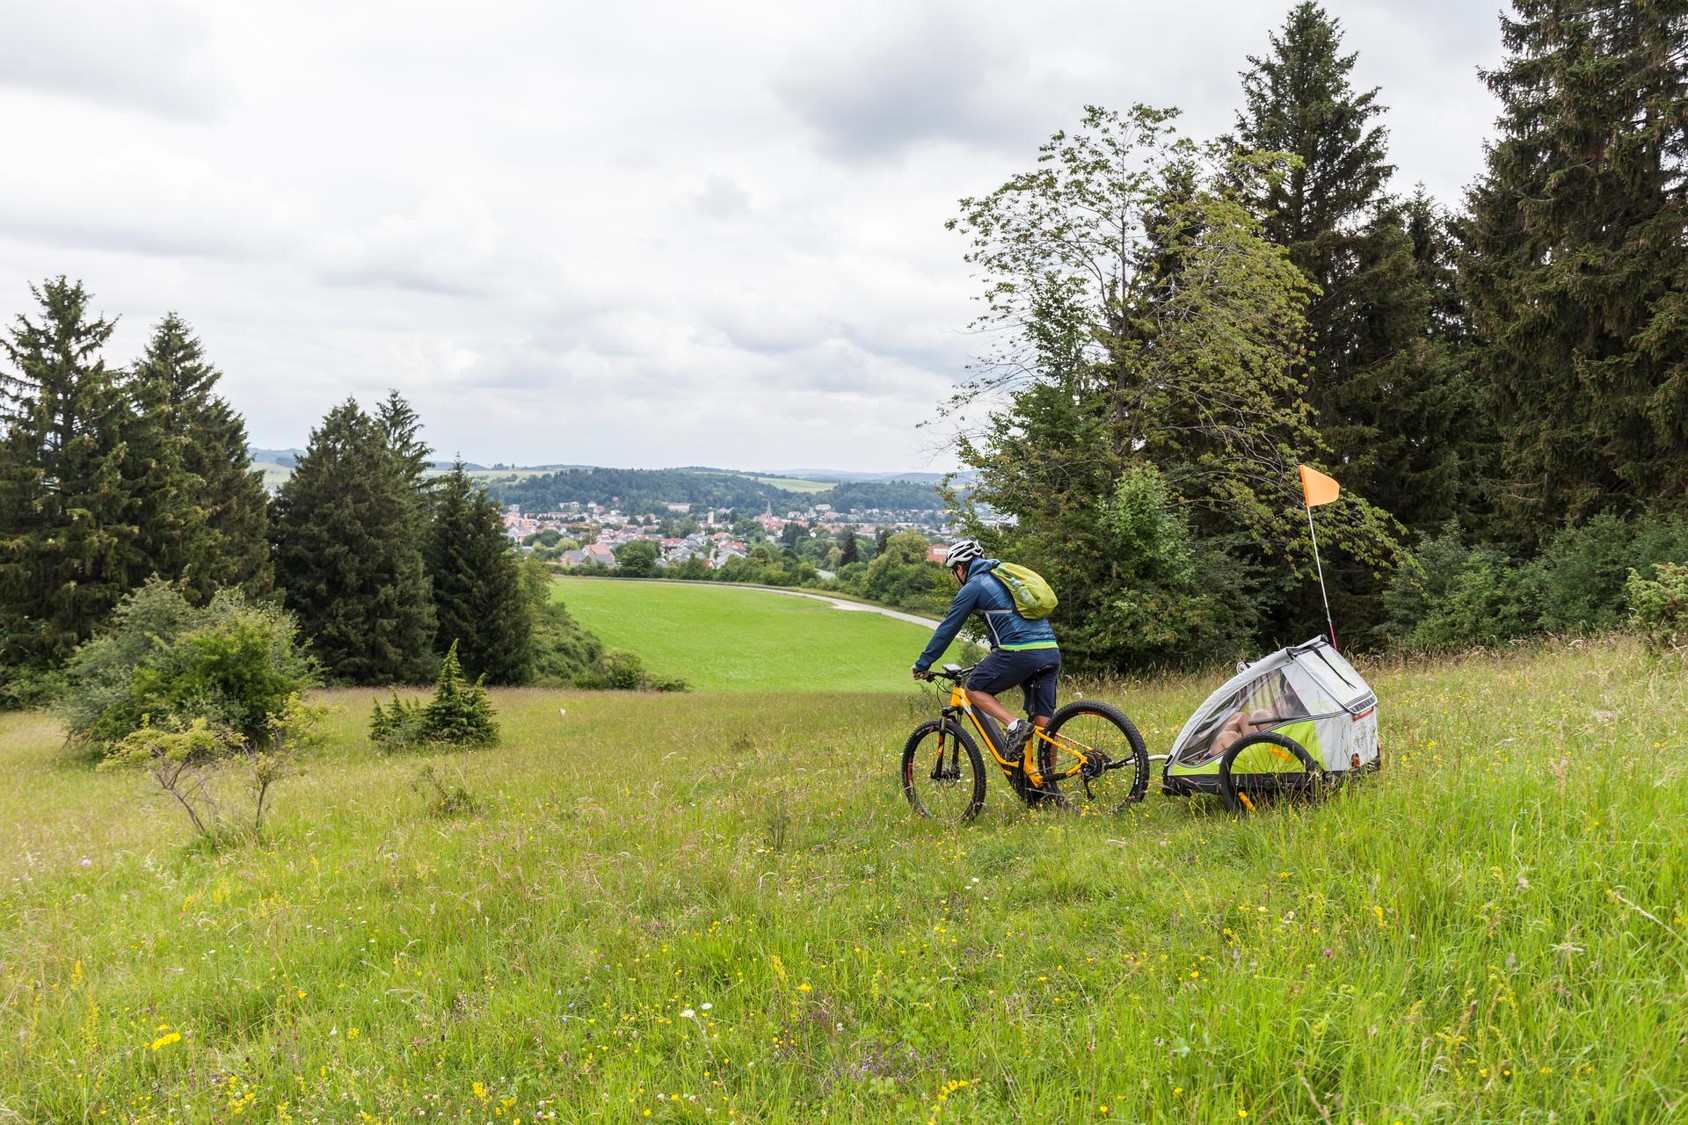 Familienradtour in Münsingen im Biosphärengebiet Schwäbische Alb. Ein*e Radfahrer*in fährt durch eine Sommerwiese. Hinten angehängt ist ein Kinderanhänger mit Fahne. Links und rechts ist Wald. Davor ist ein Ausblick über Wiesen und eine Stadt.